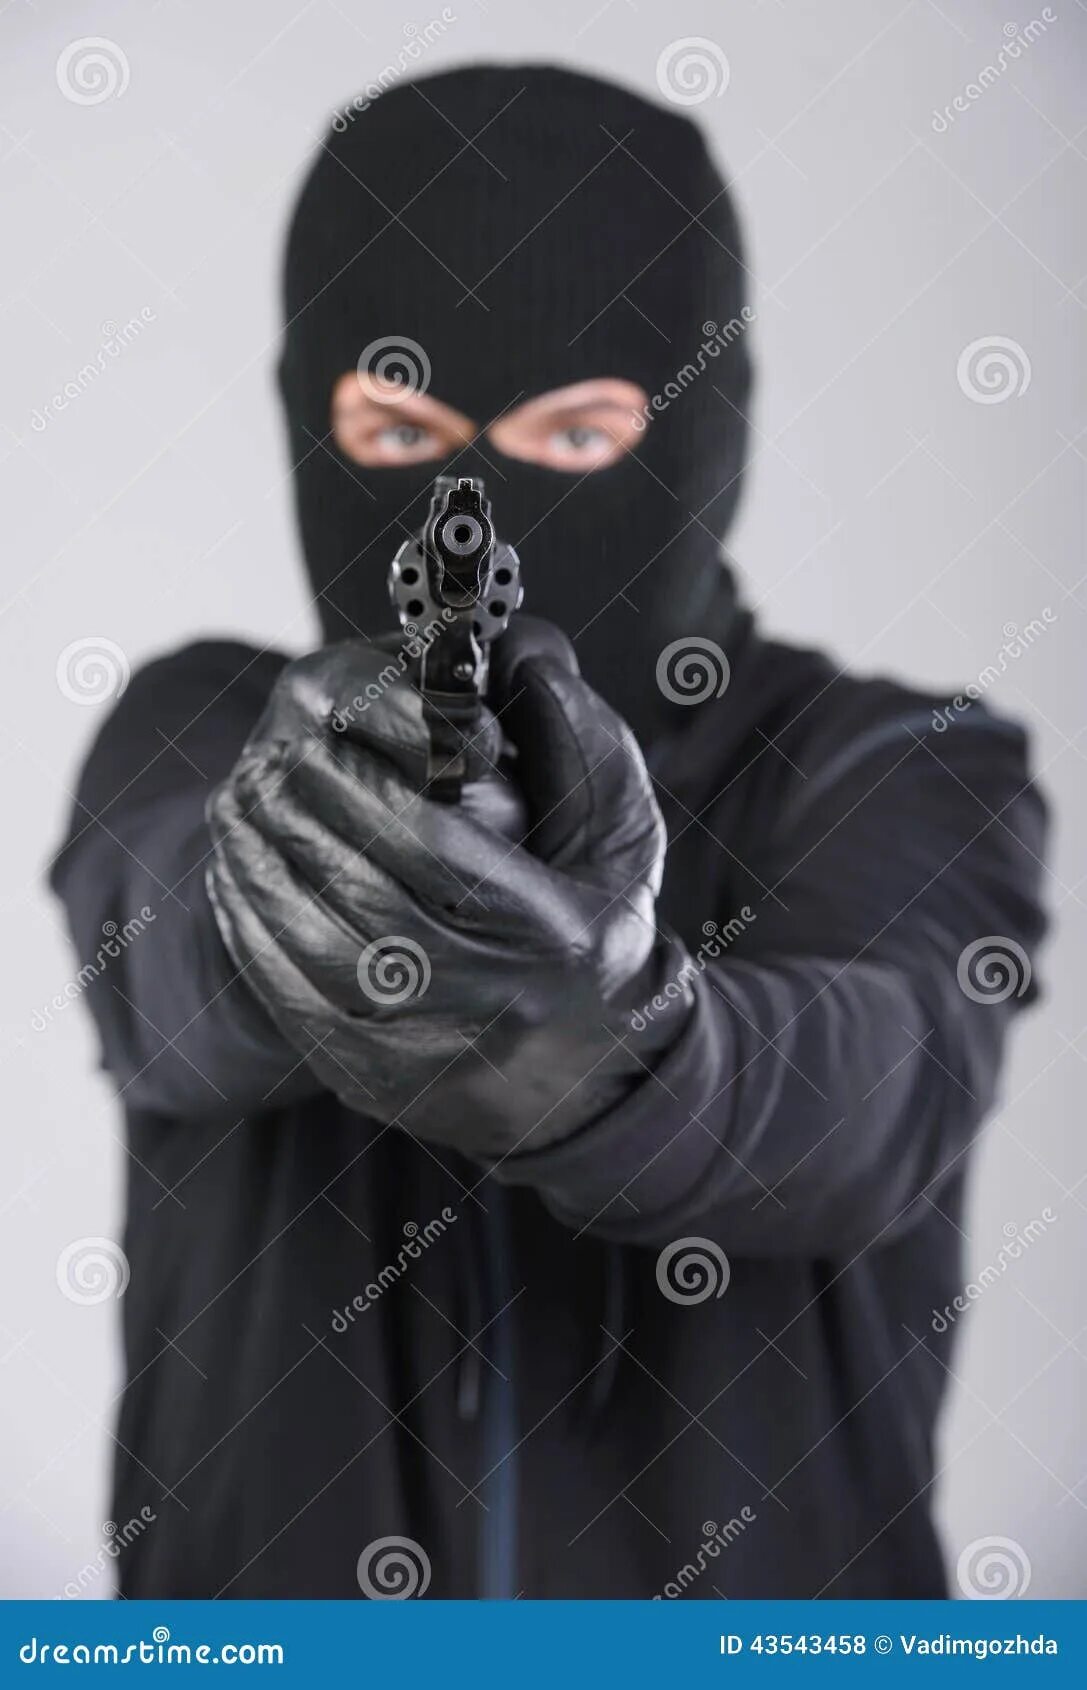 Страница угрожать. Masked Robber. Female masked Robber. Robbery with Camera. Robber with Gun.